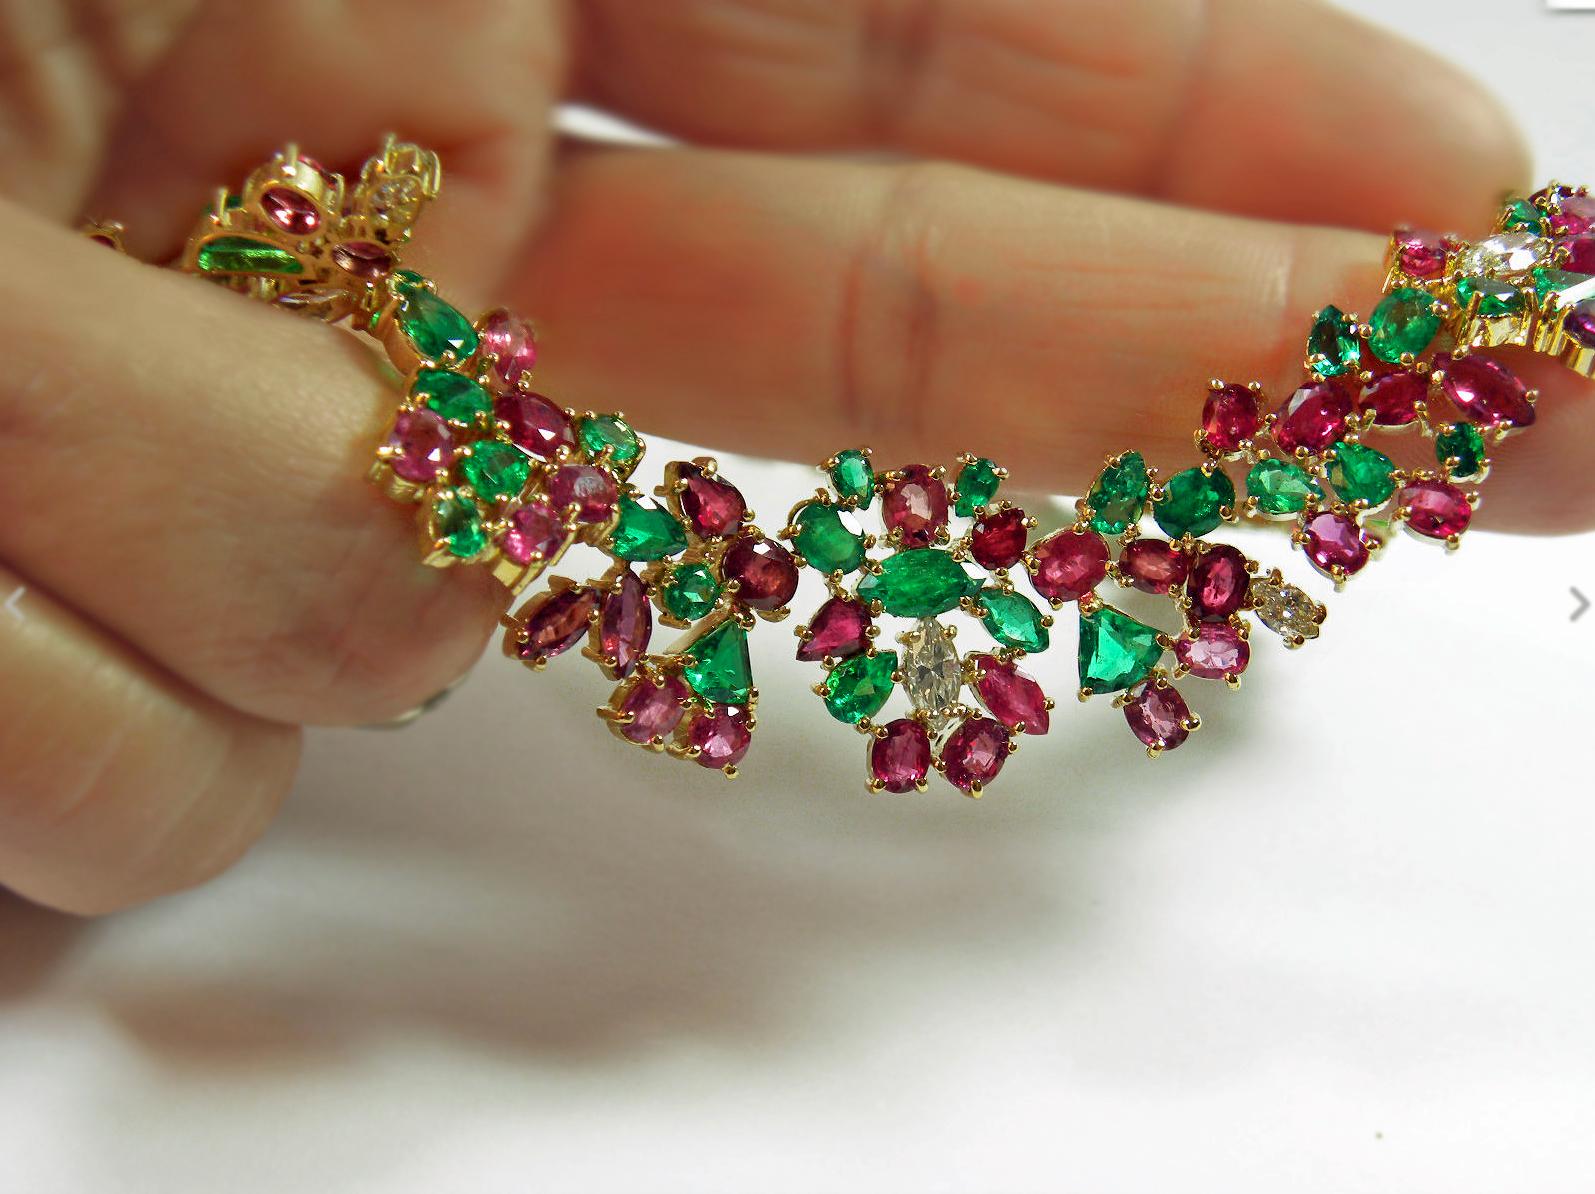 Diese exquisite Smaragd-Rubin-Diamant-Halskette aus 18-karätigem Gold mit dem Namen Tutti Frutti Garden ist ein einzigartiges Schmuckstück.
Primäre Steine: 100% natürlicher Rubin
Rubine formen oder schneiden: Mix-Schliff 
Durchschnittliche